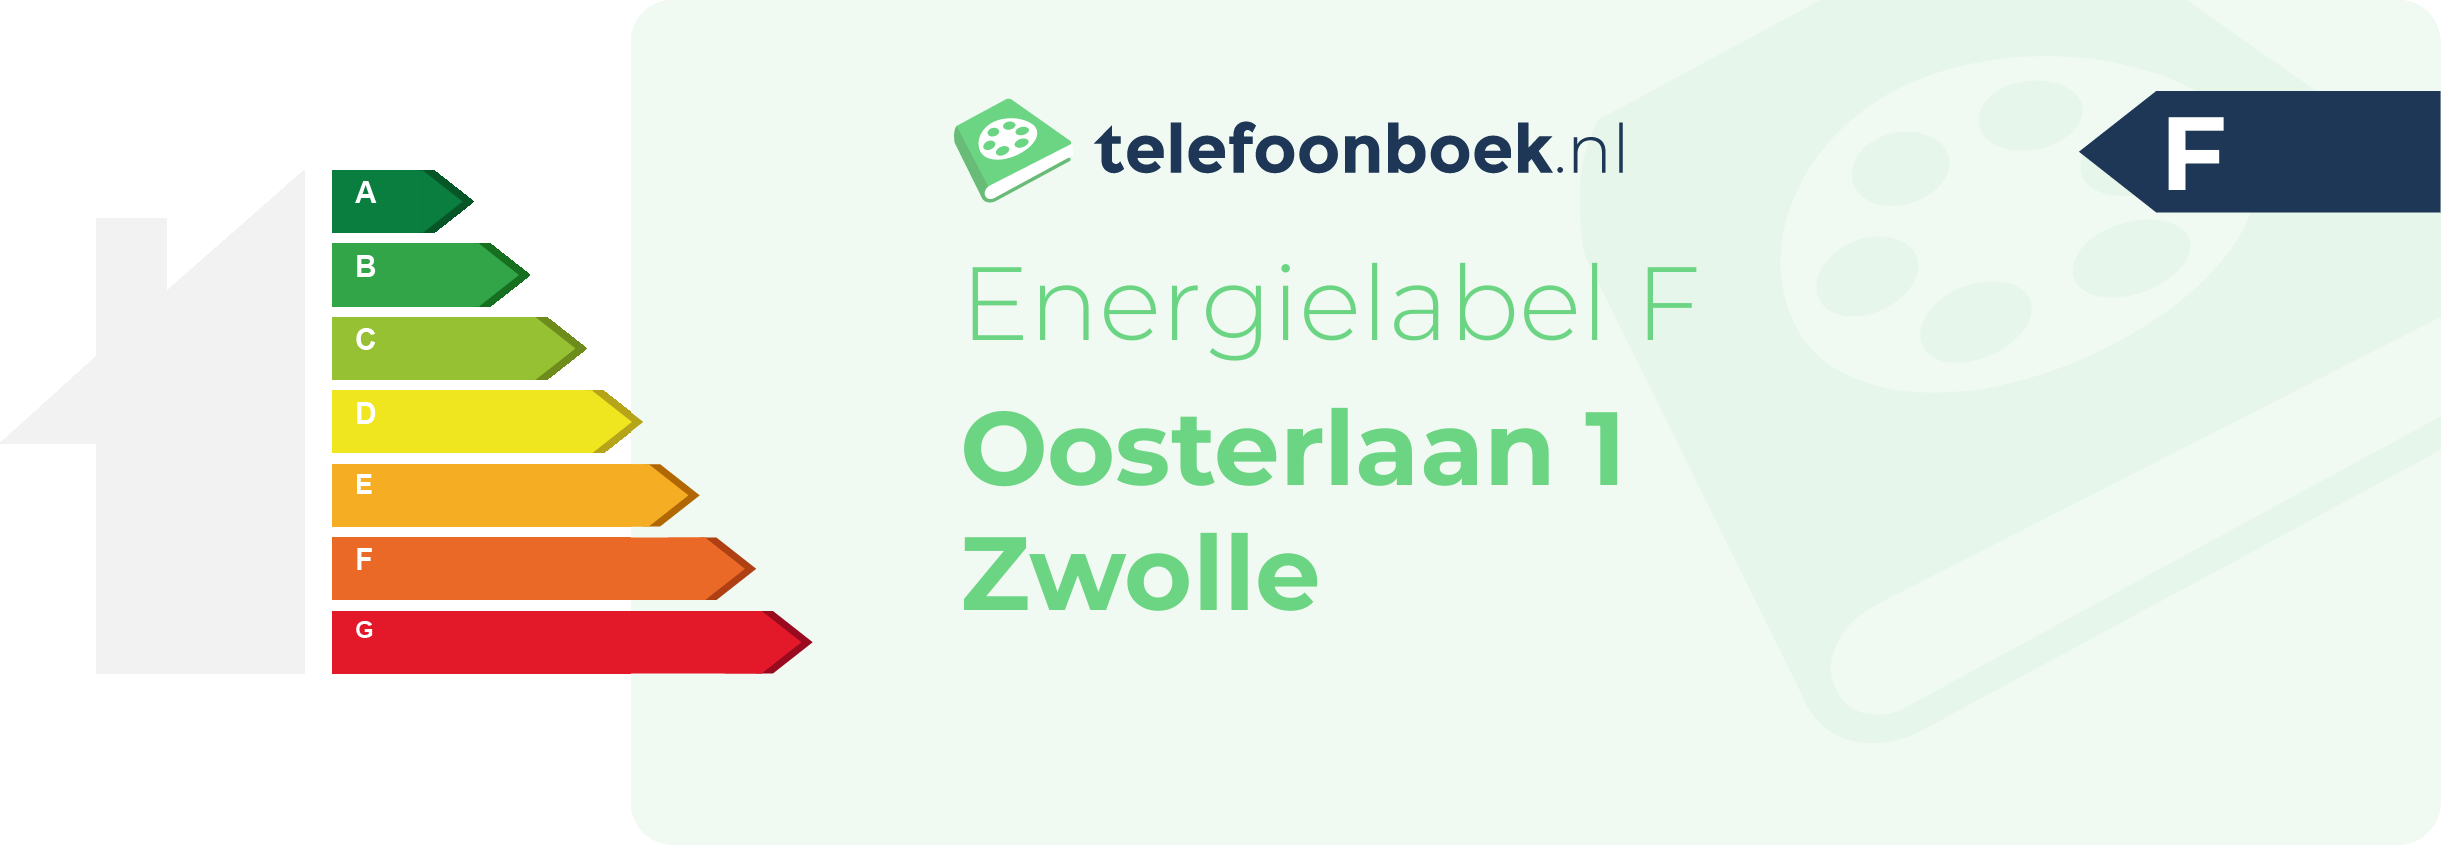 Energielabel Oosterlaan 1 Zwolle